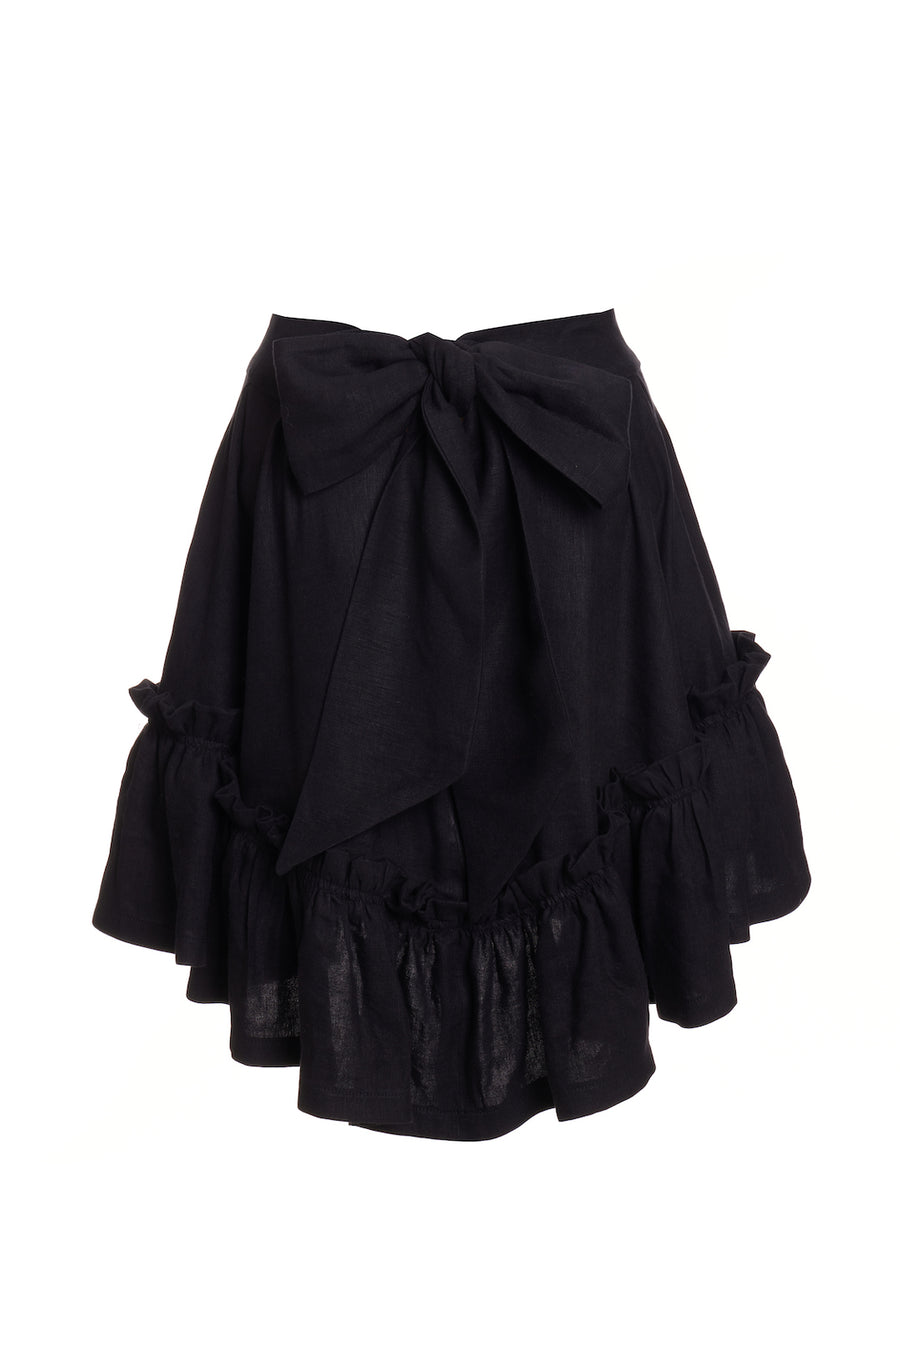 Quinoa Skirt Black Linen